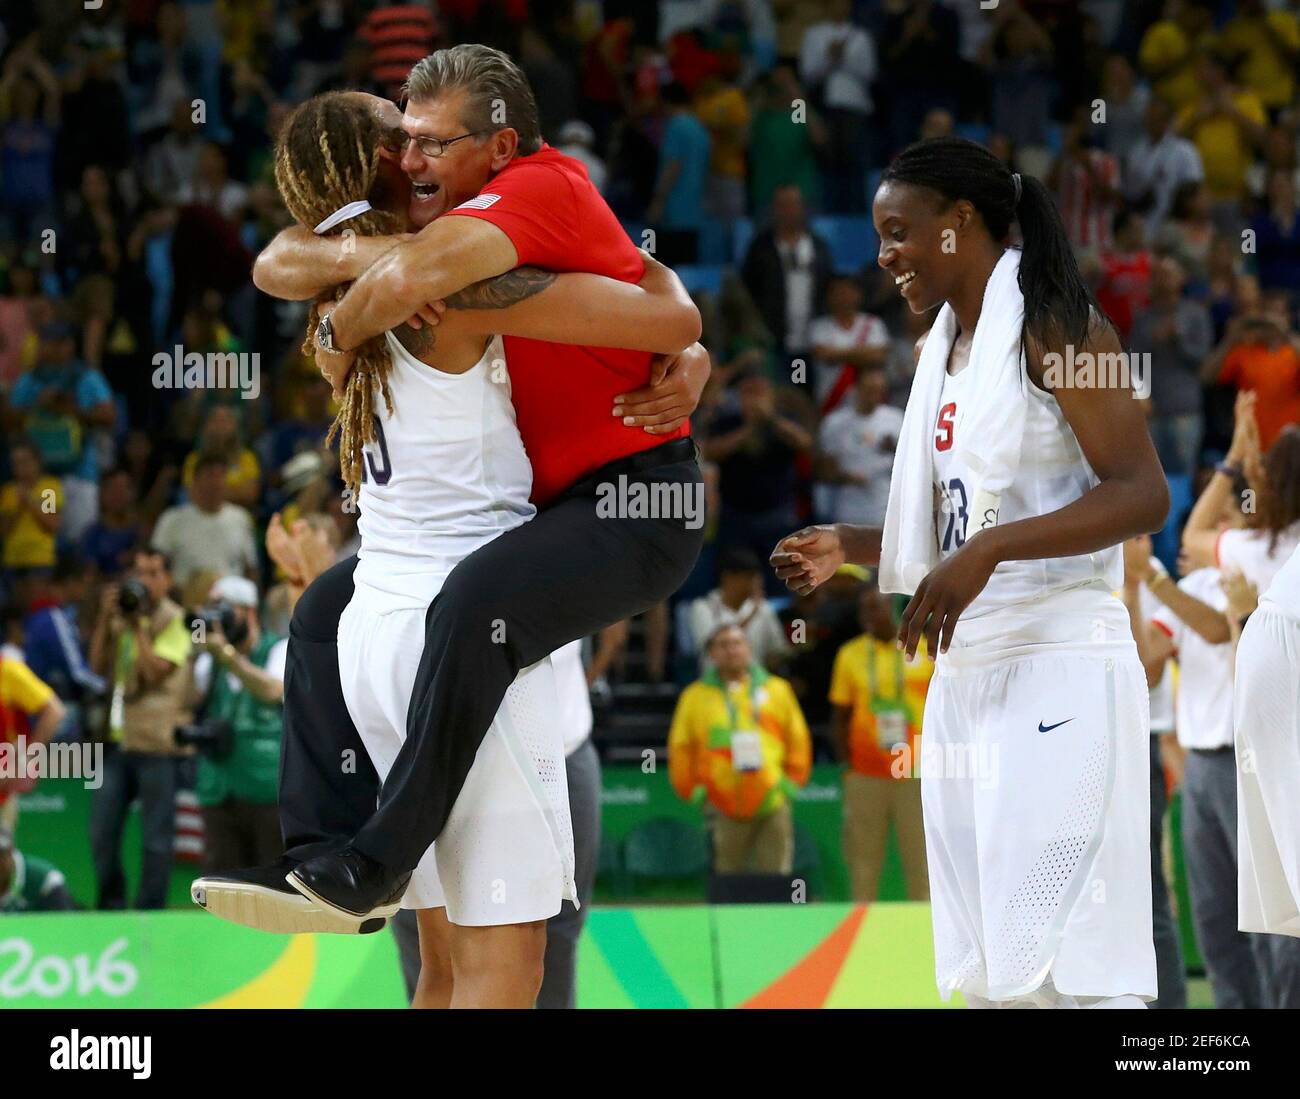 2016 Jeux Olympiques de Rio - Basketball - final - jeu de la médaille d'or des femmes USA / Espagne - Carioca Arena 1 - Rio de Janeiro, Brésil - 20/8/2016. L'entraîneur-chef Geno Auriemma (USA) des Etats-Unis fait des hugs Brittney Griner (USA) des Etats-Unis près de Sylvia Fowles (USA) des Etats-Unis. REUTERS/Jim Young À USAGE ÉDITORIAL EXCLUSIF. NE PAS VENDRE POUR DES CAMPAGNES DE MARKETING OU DE PUBLICITÉ. Image fournie par action Images Banque D'Images